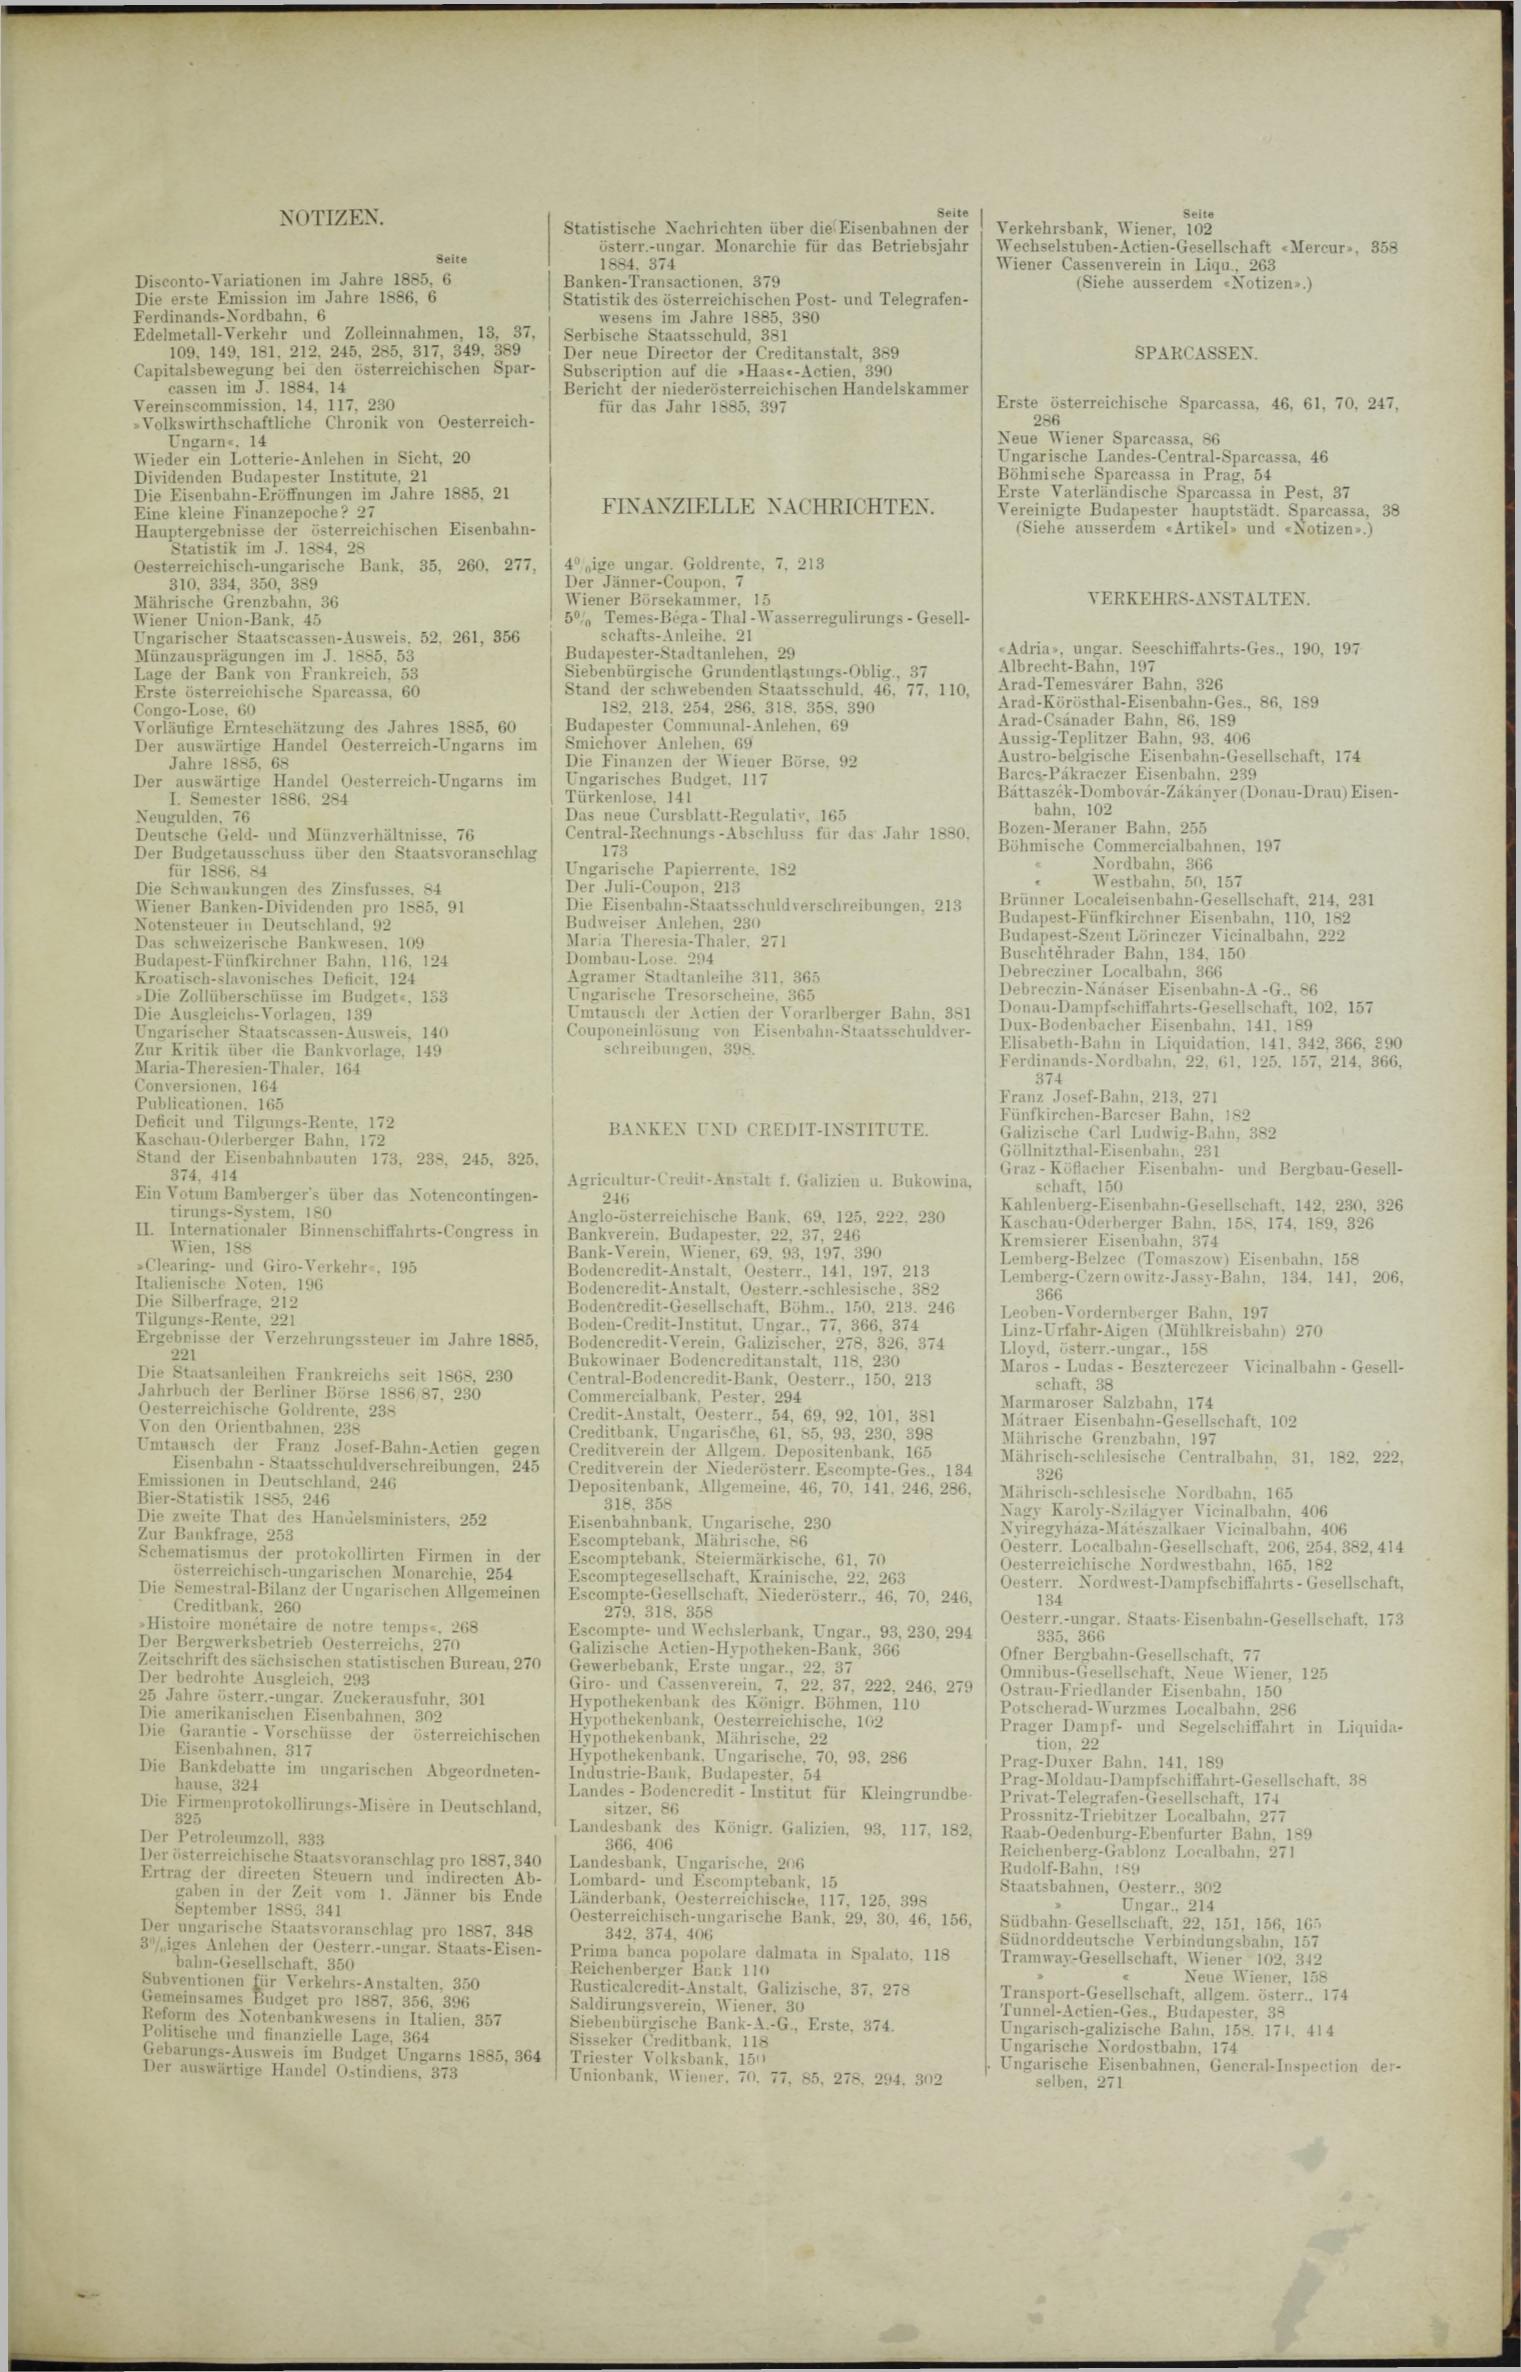 Der Tresor 02.09.1886 - Seite 11